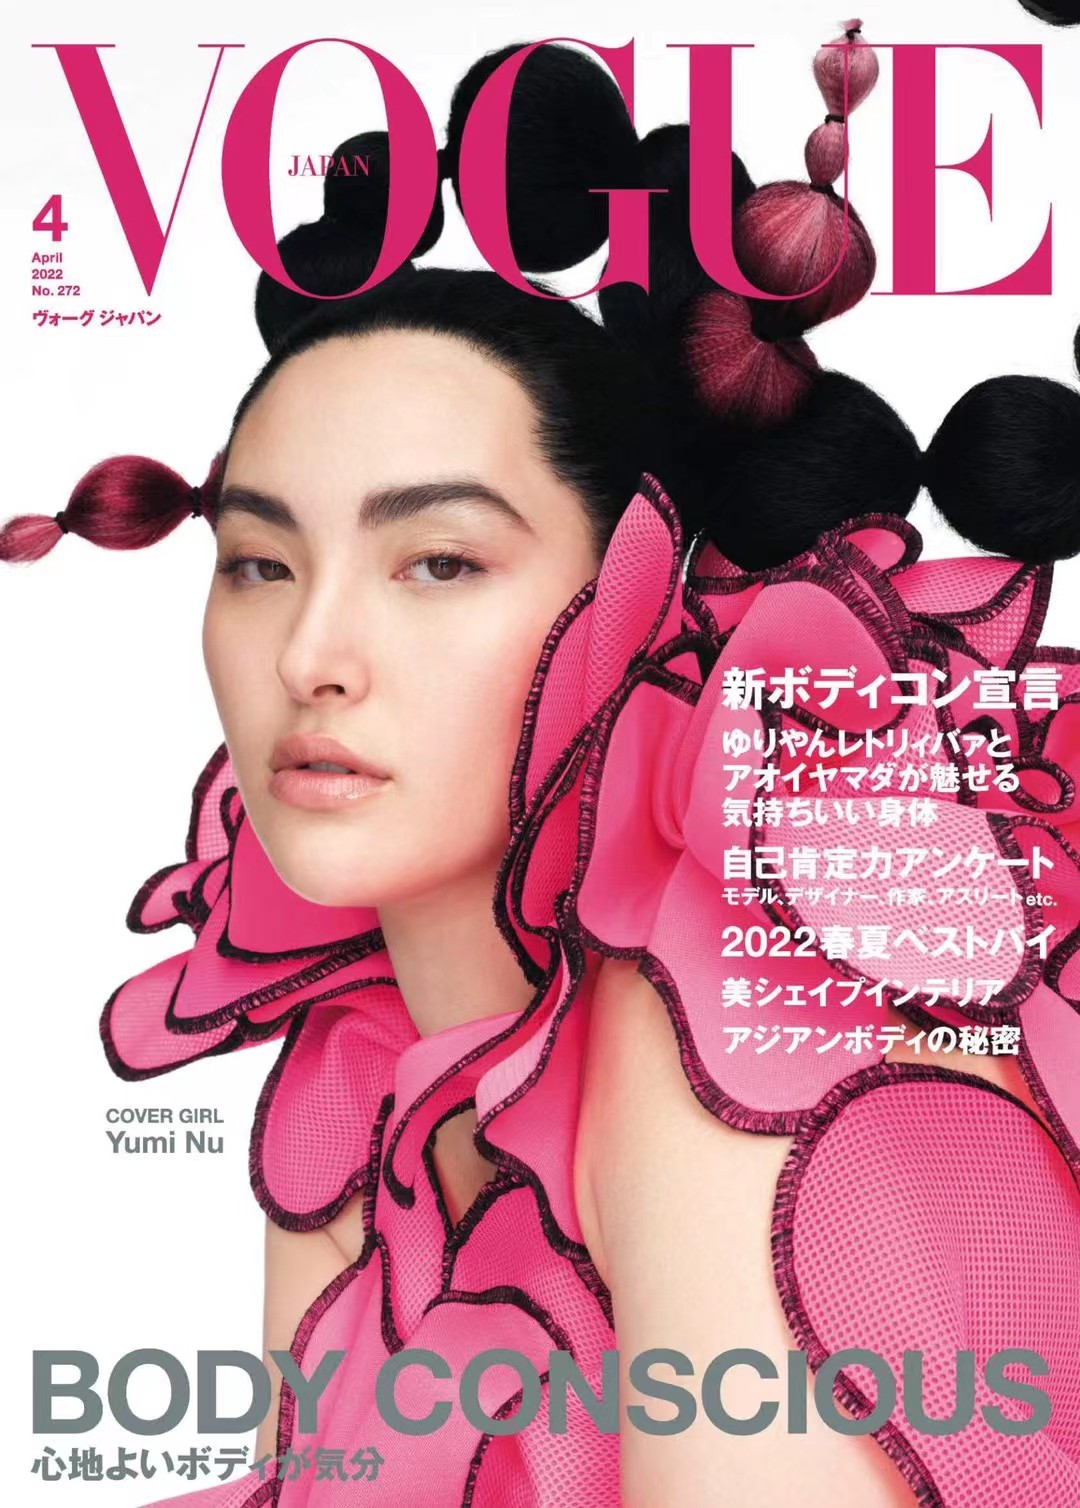 【瑜伽健身上新】 【日本】 [日本版]Vogue 女性时尚杂志 2022年4月刊 电子版